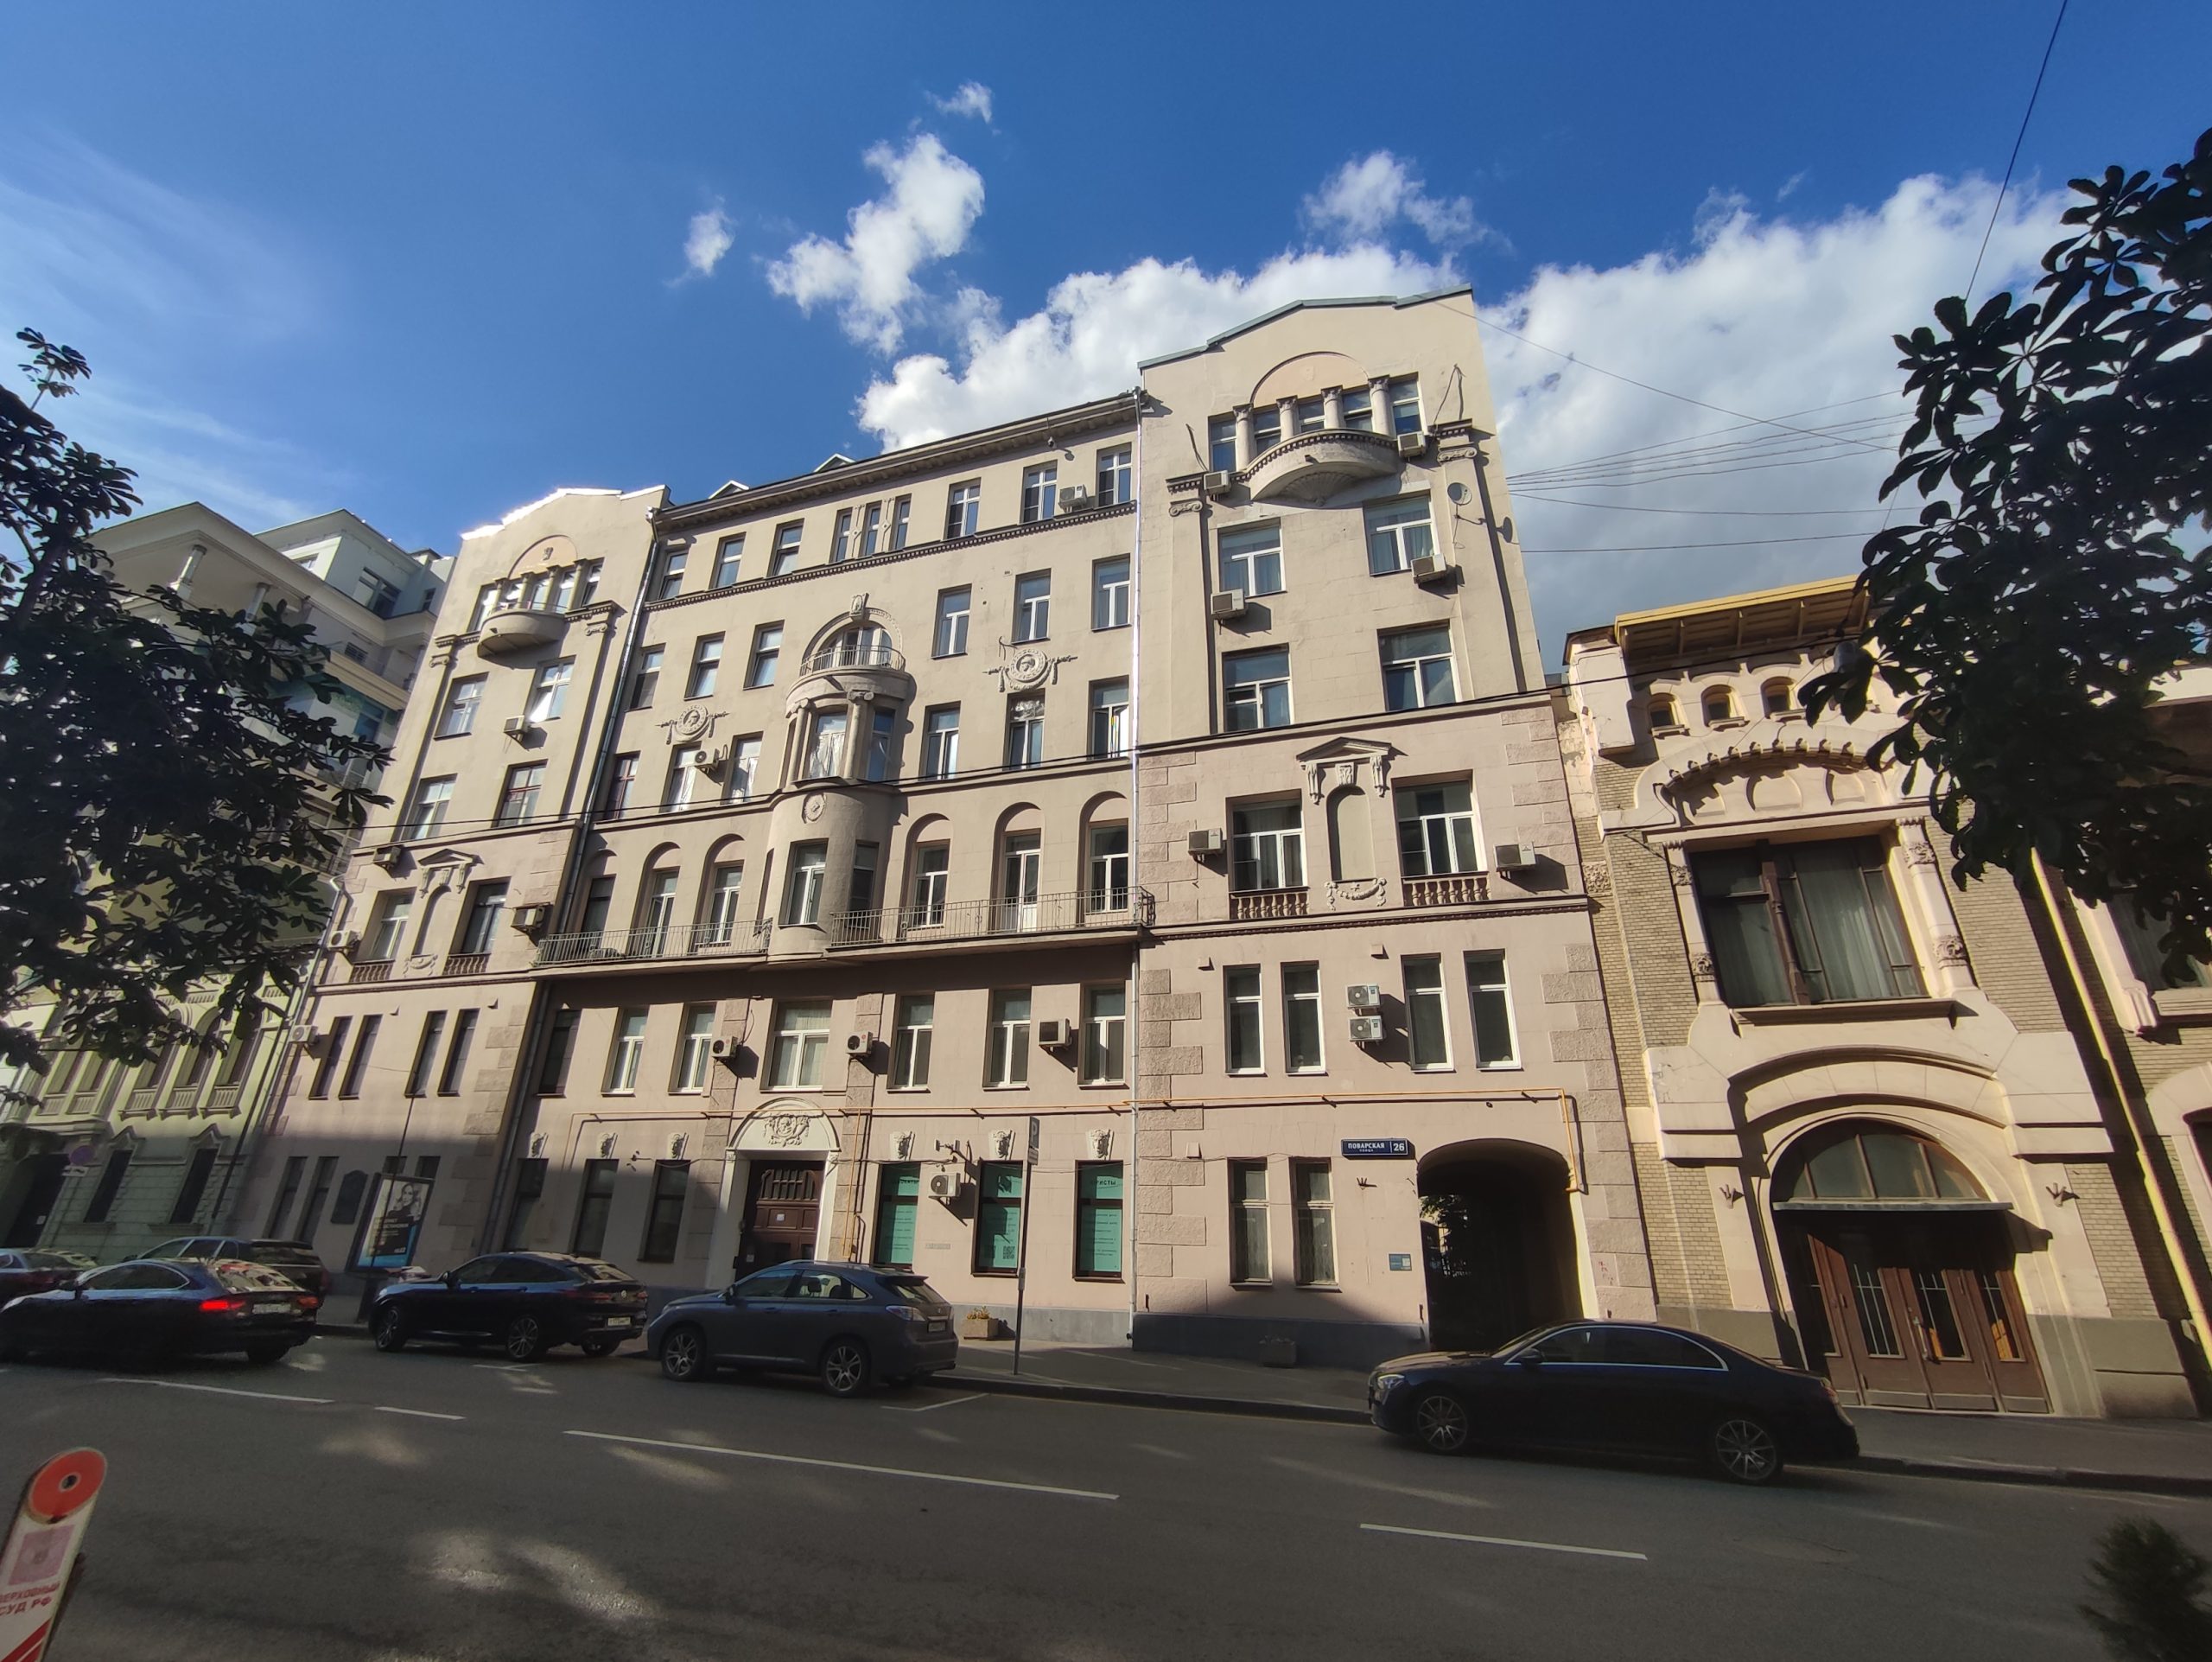 Дом № 26 по улице Поварской (первоначальное название возвращено в 1992 году) с 2004 года считается признанным объектом культурного наследия. Фото: Мария Хапцова, 